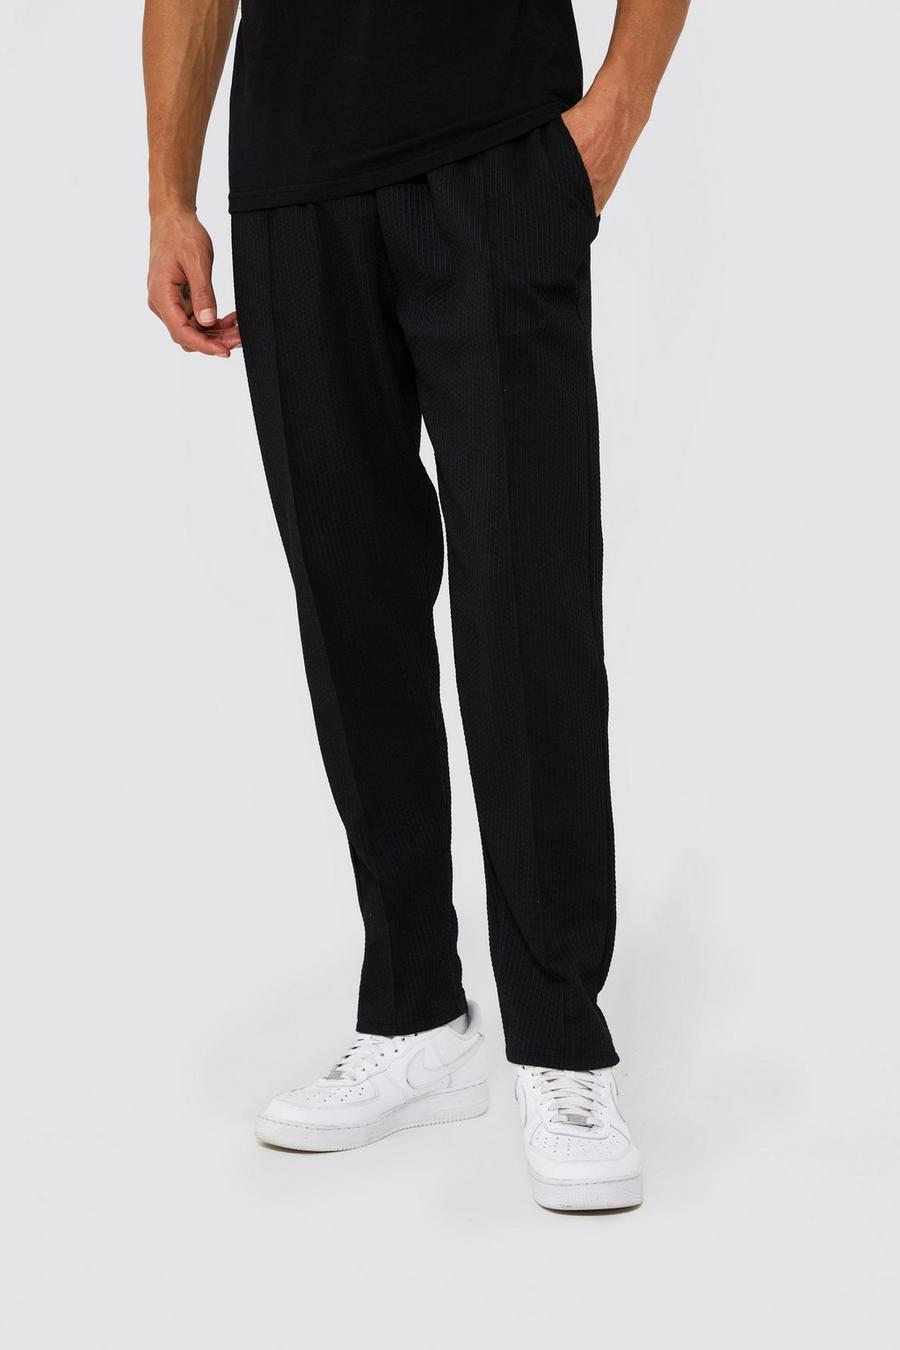 Pantalón deportivo Tall de jacquard ajustado con alforza, Black negro